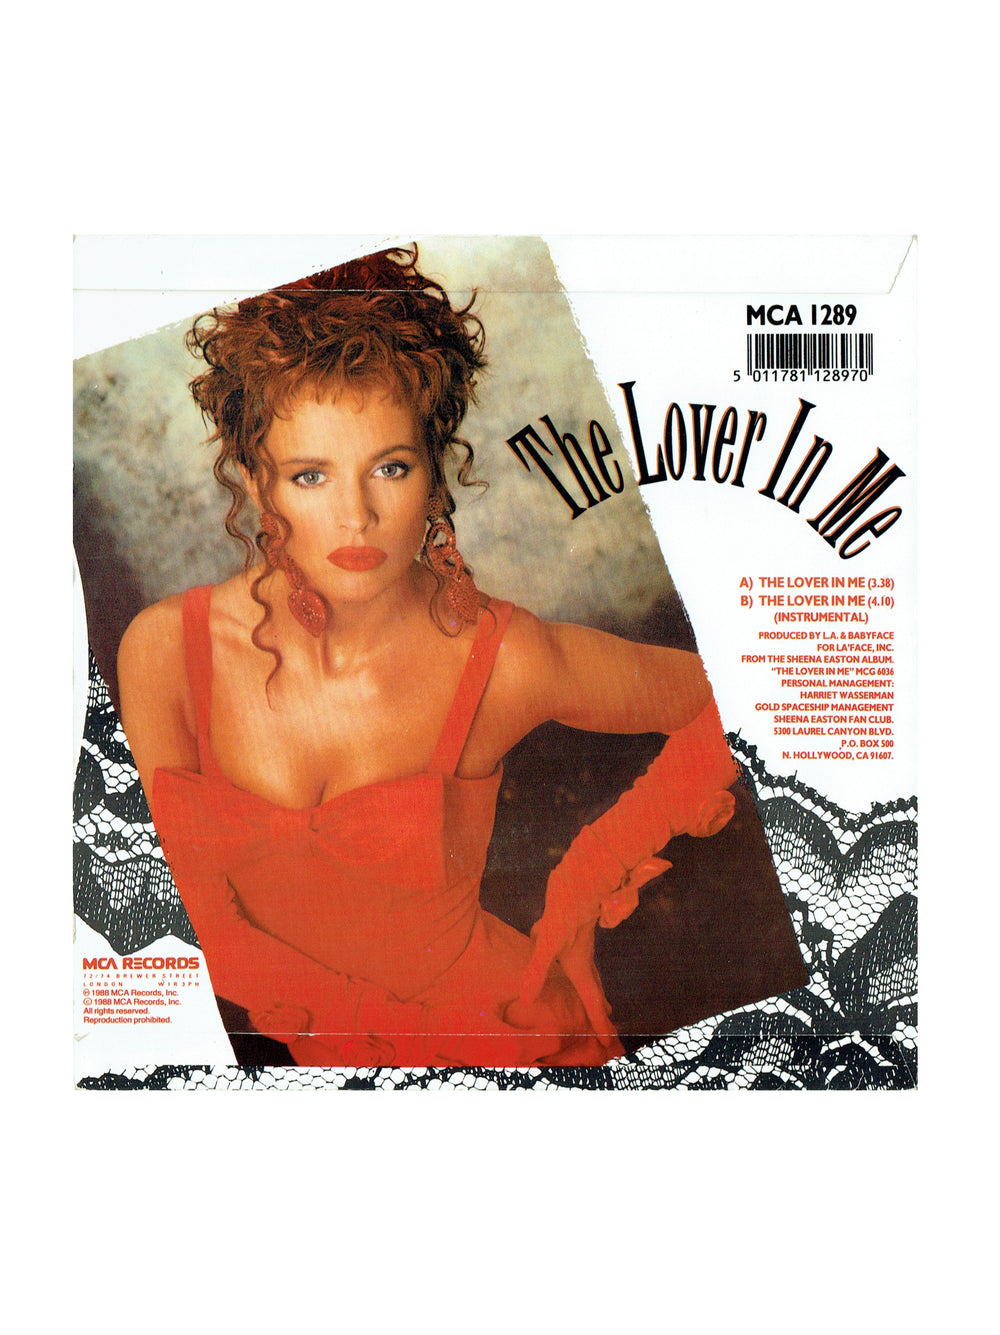 Prince – Sheena Easton The Lover In Me Vinyl 7" Single UK Preloved: 1988